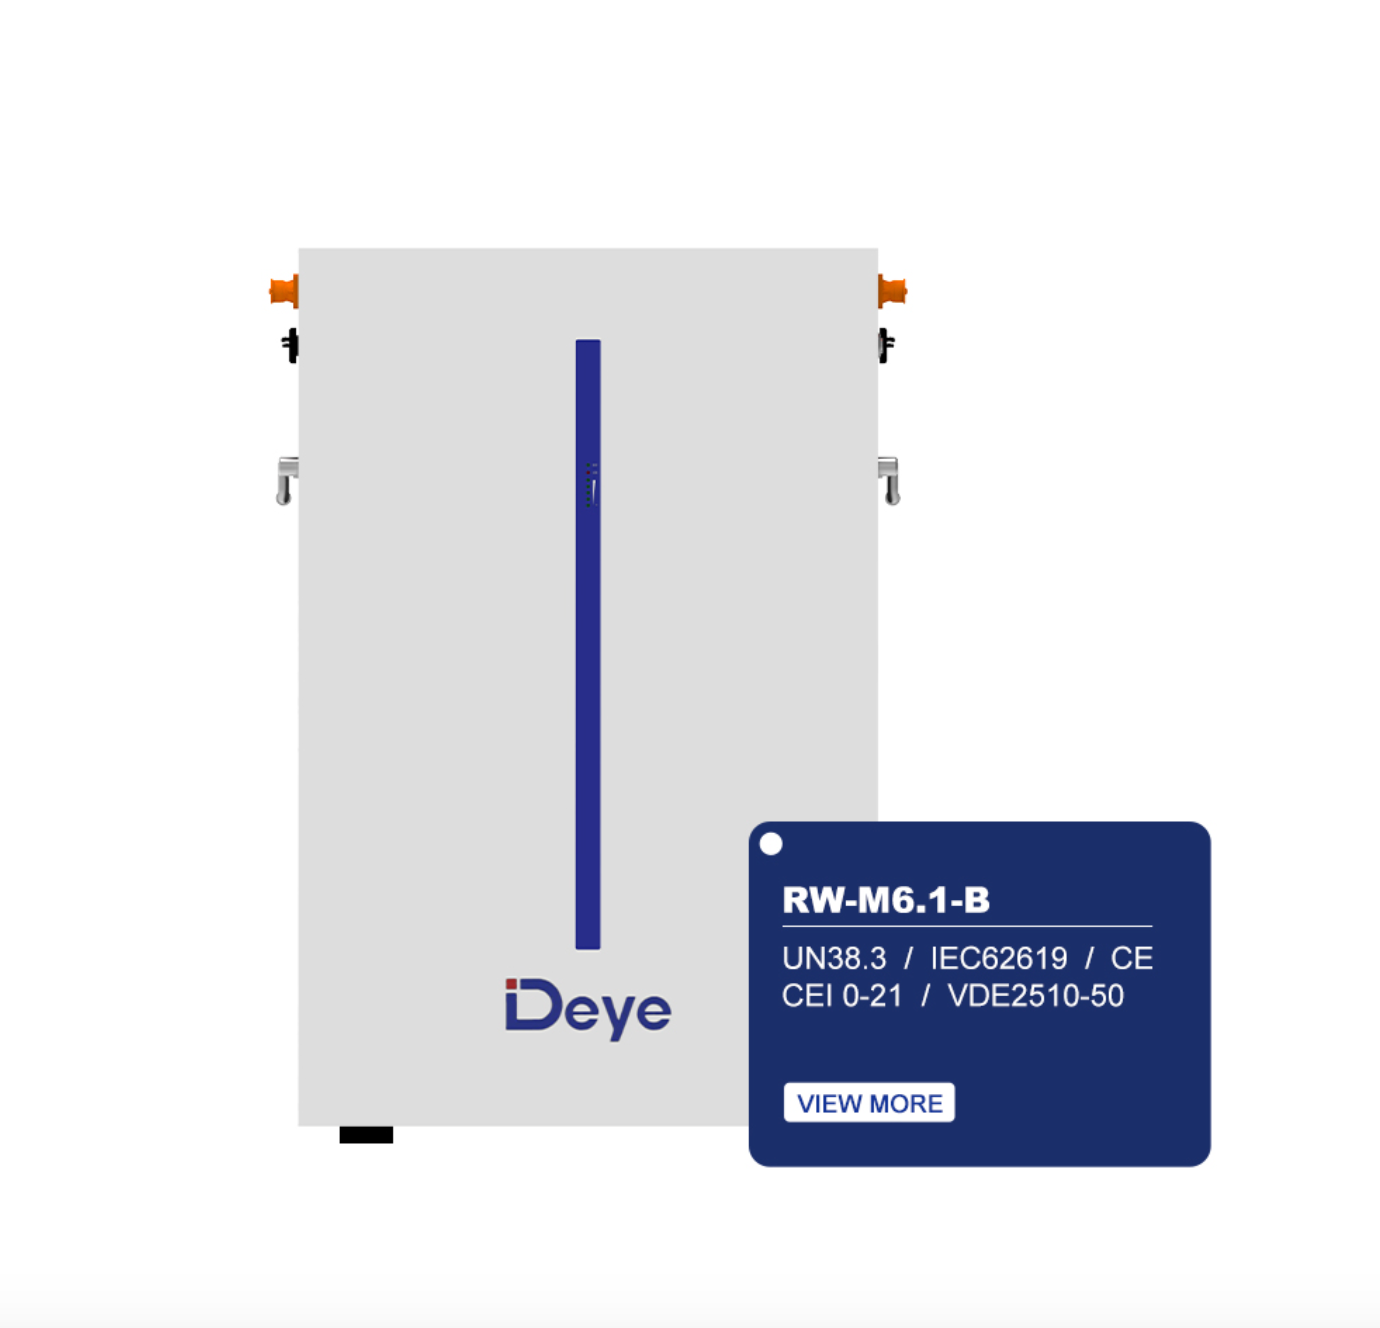 Deye battery storage SE-G5.1 PRO, AKKU, solar storage LiFePO4